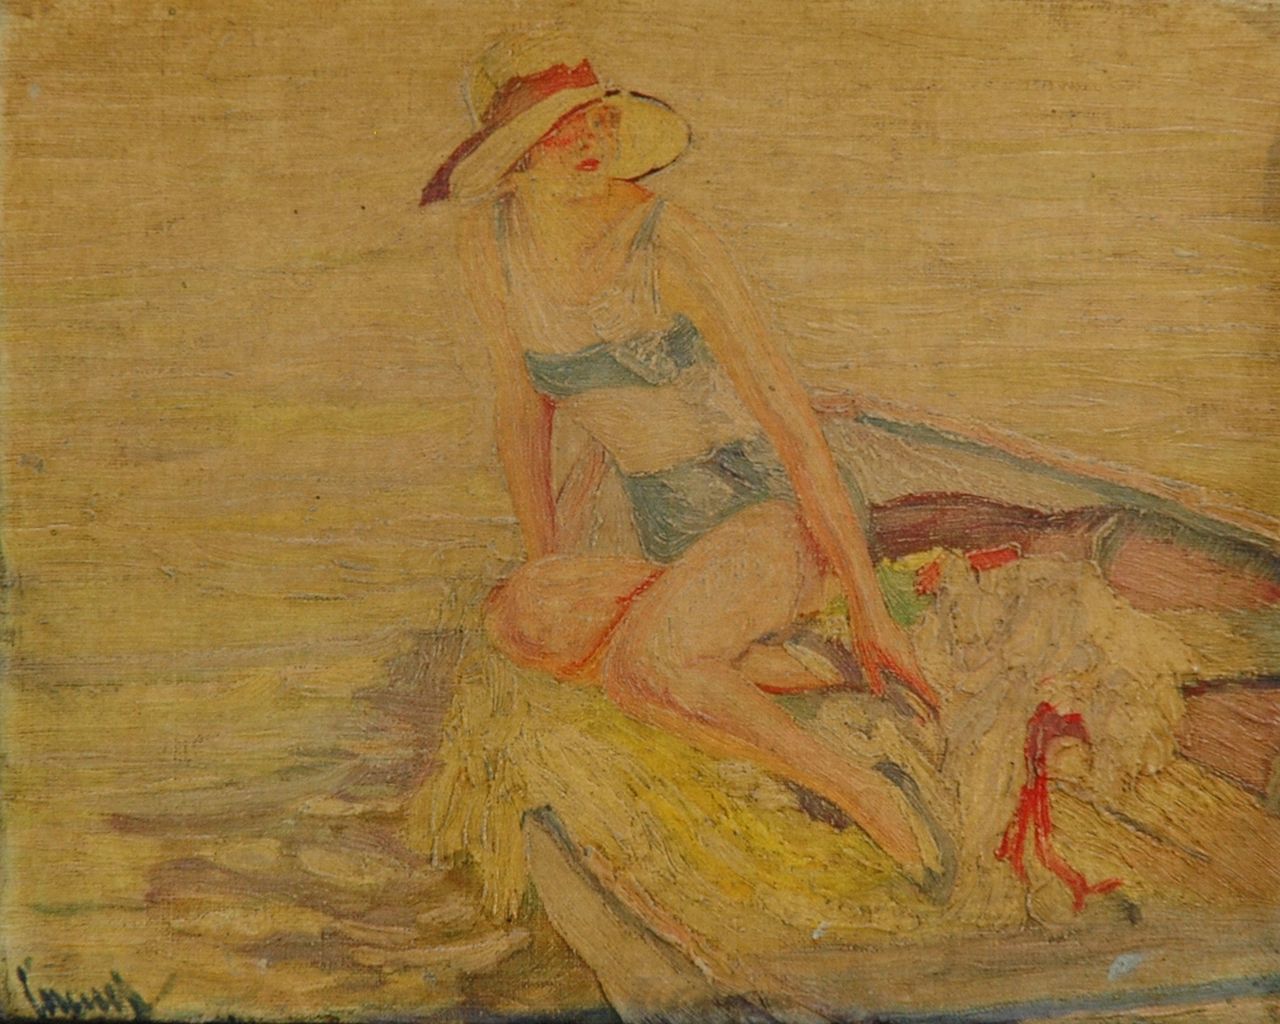 Cucuel E.  | Edward Cucuel, Sunbathing on a boat, Öl auf Leinwand 24,0 x 30,0 cm, signed l.l.